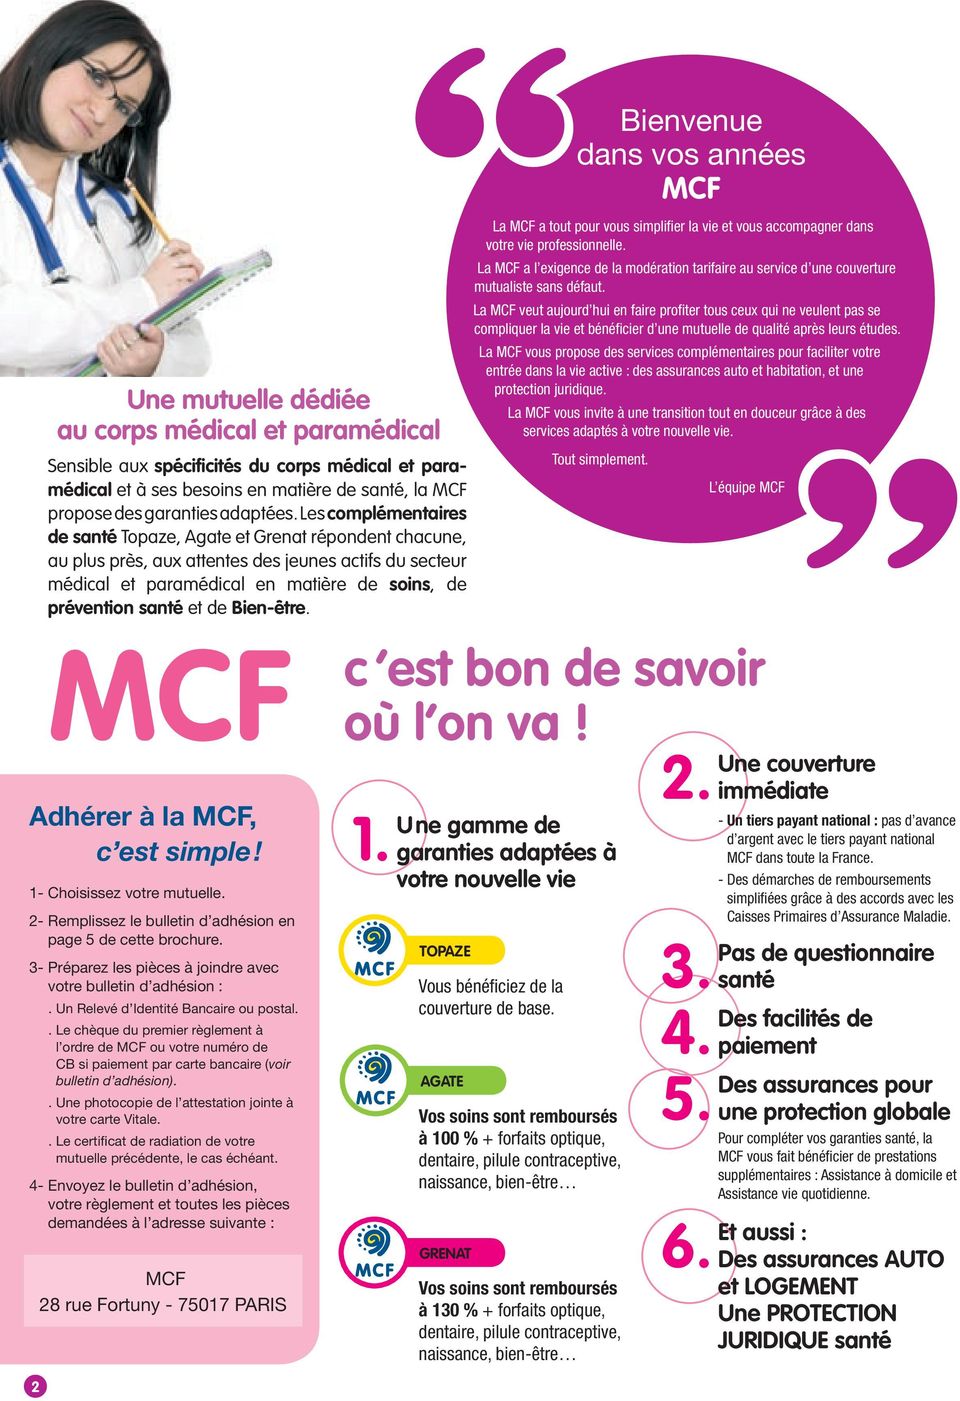 Bien-être. MCF Adhérer à la MCF, c est simple! 1- Choisissez votre mutuelle. 2- Remplissez le bulletin d adhésion en page 5 de cette brochure.